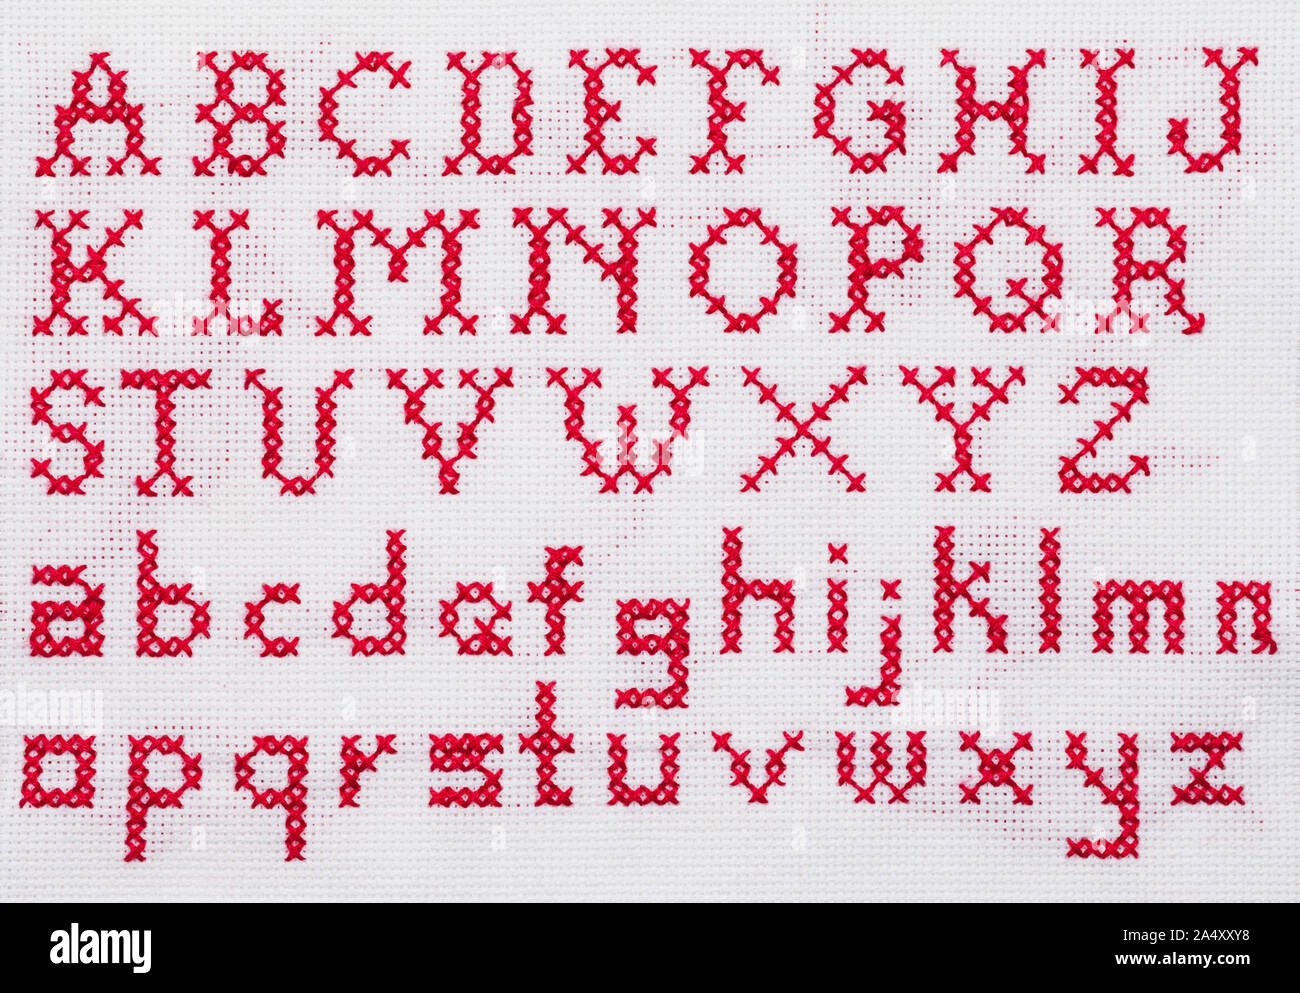 Red Alfabeti a Punto Croce Sampler con lettere minuscole e maiuscole. Foto Stock